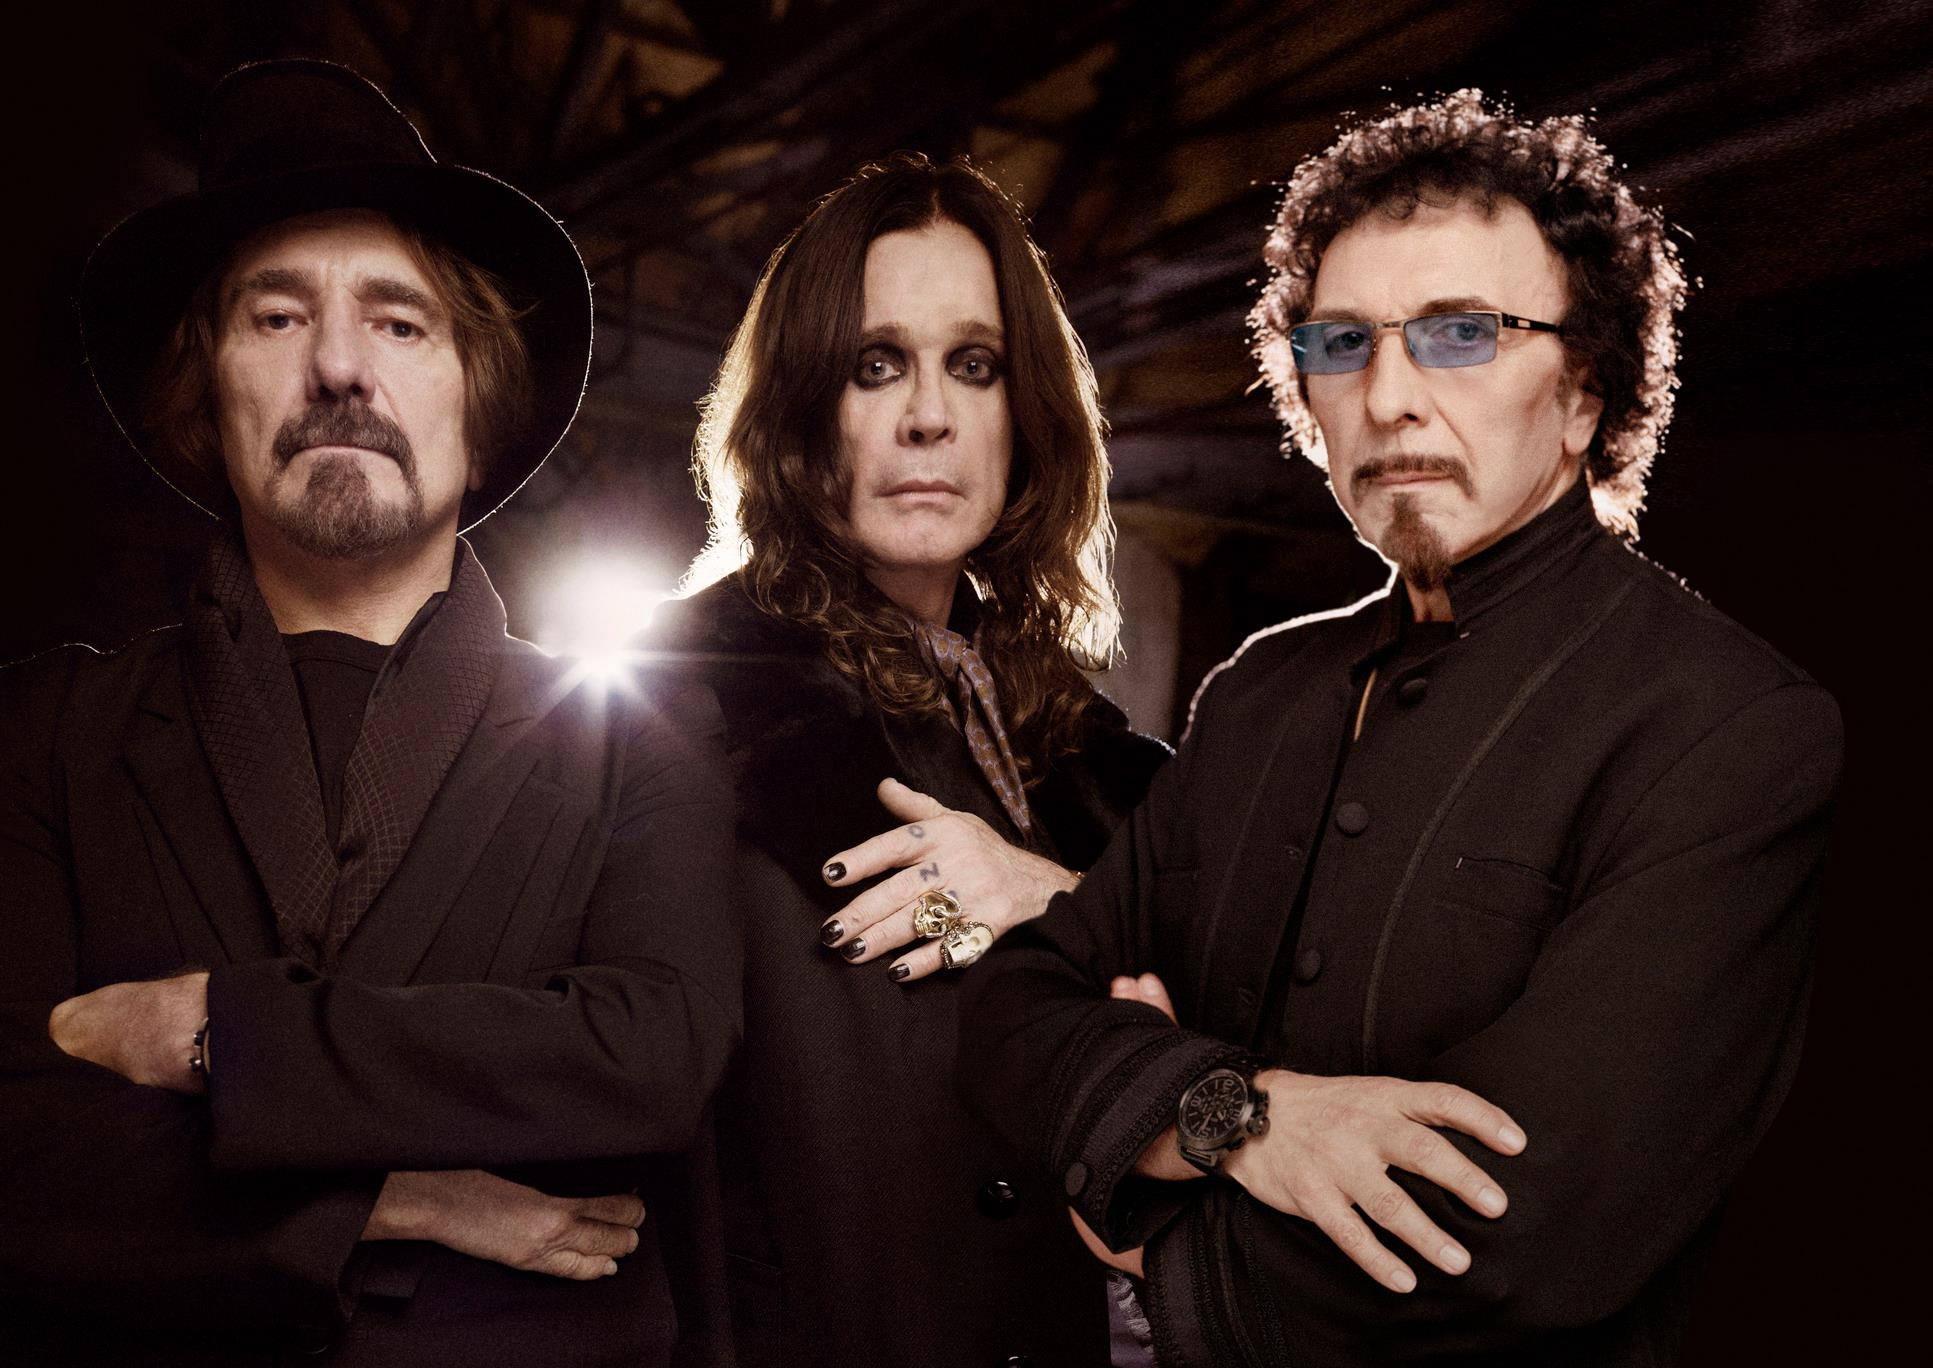 Un pequeño vistazo a The End de Black Sabbath